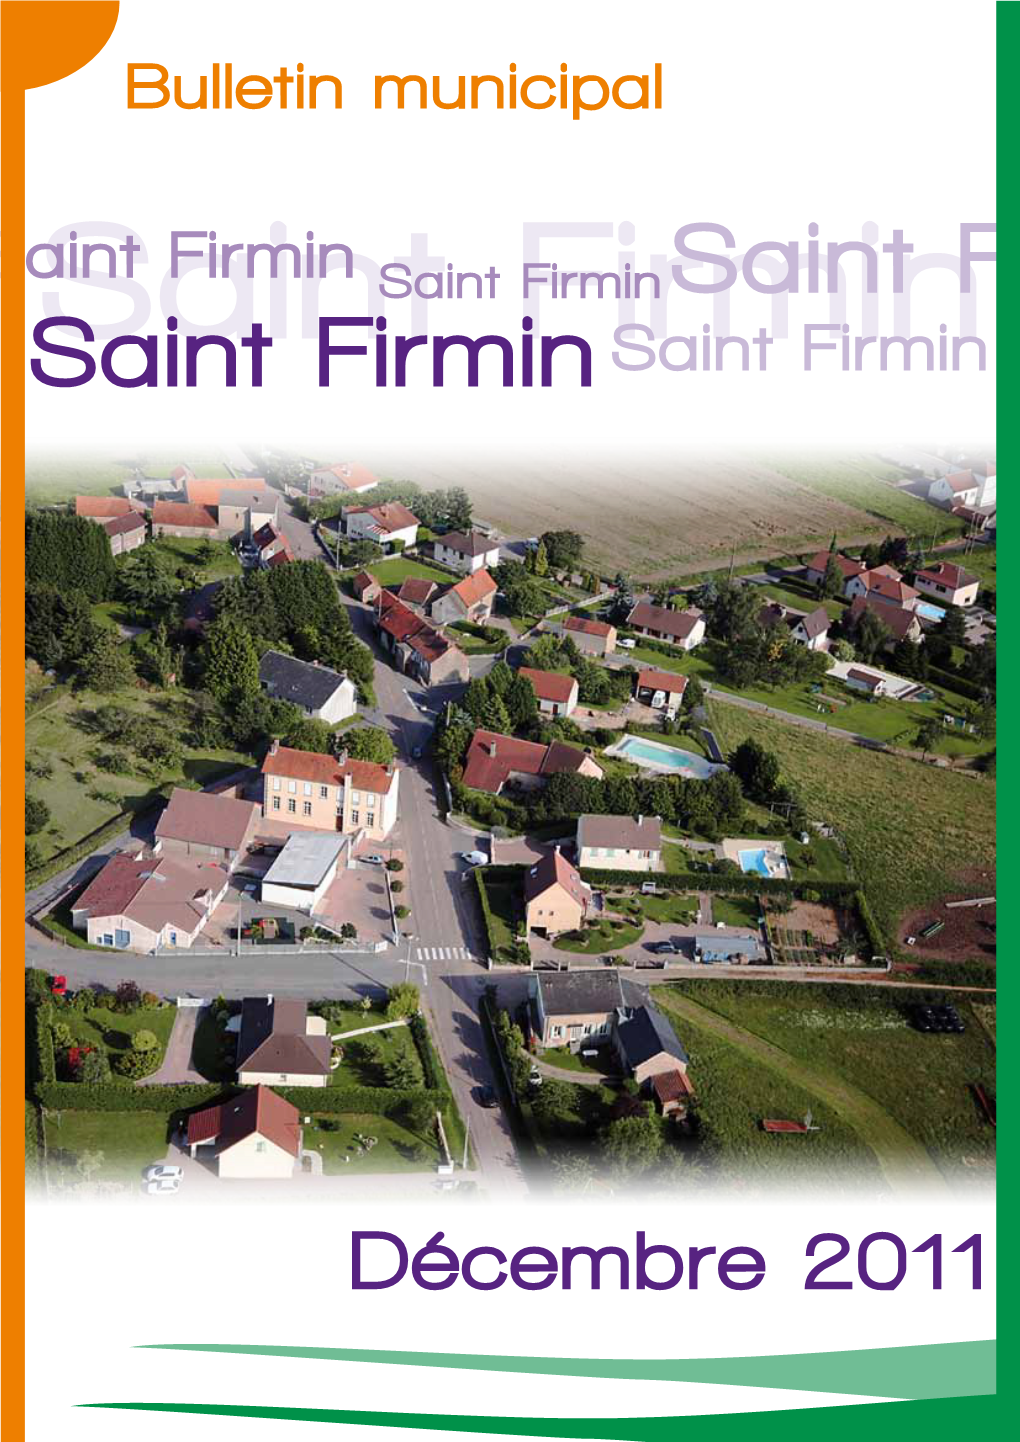 Saint Firmin Saint Firmin Saint Firmin Saintsaint Firmin Firminsaint Firmin